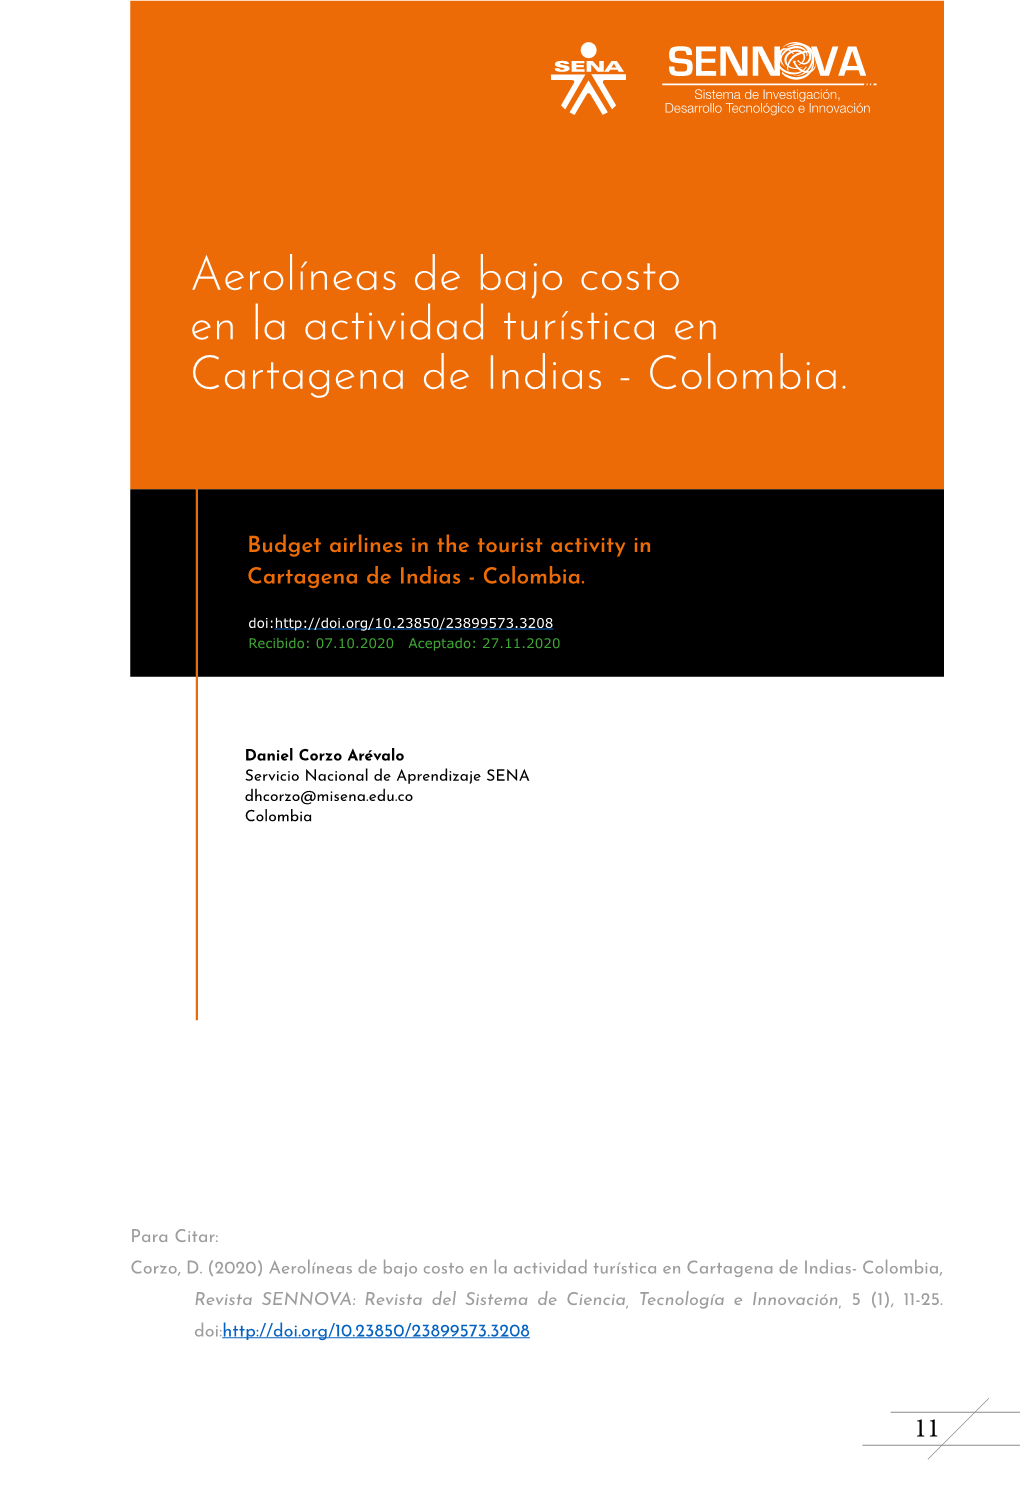 Aerolíneas De Bajo Costo En La Actividad Turística En Cartagena De Indias - Colombia